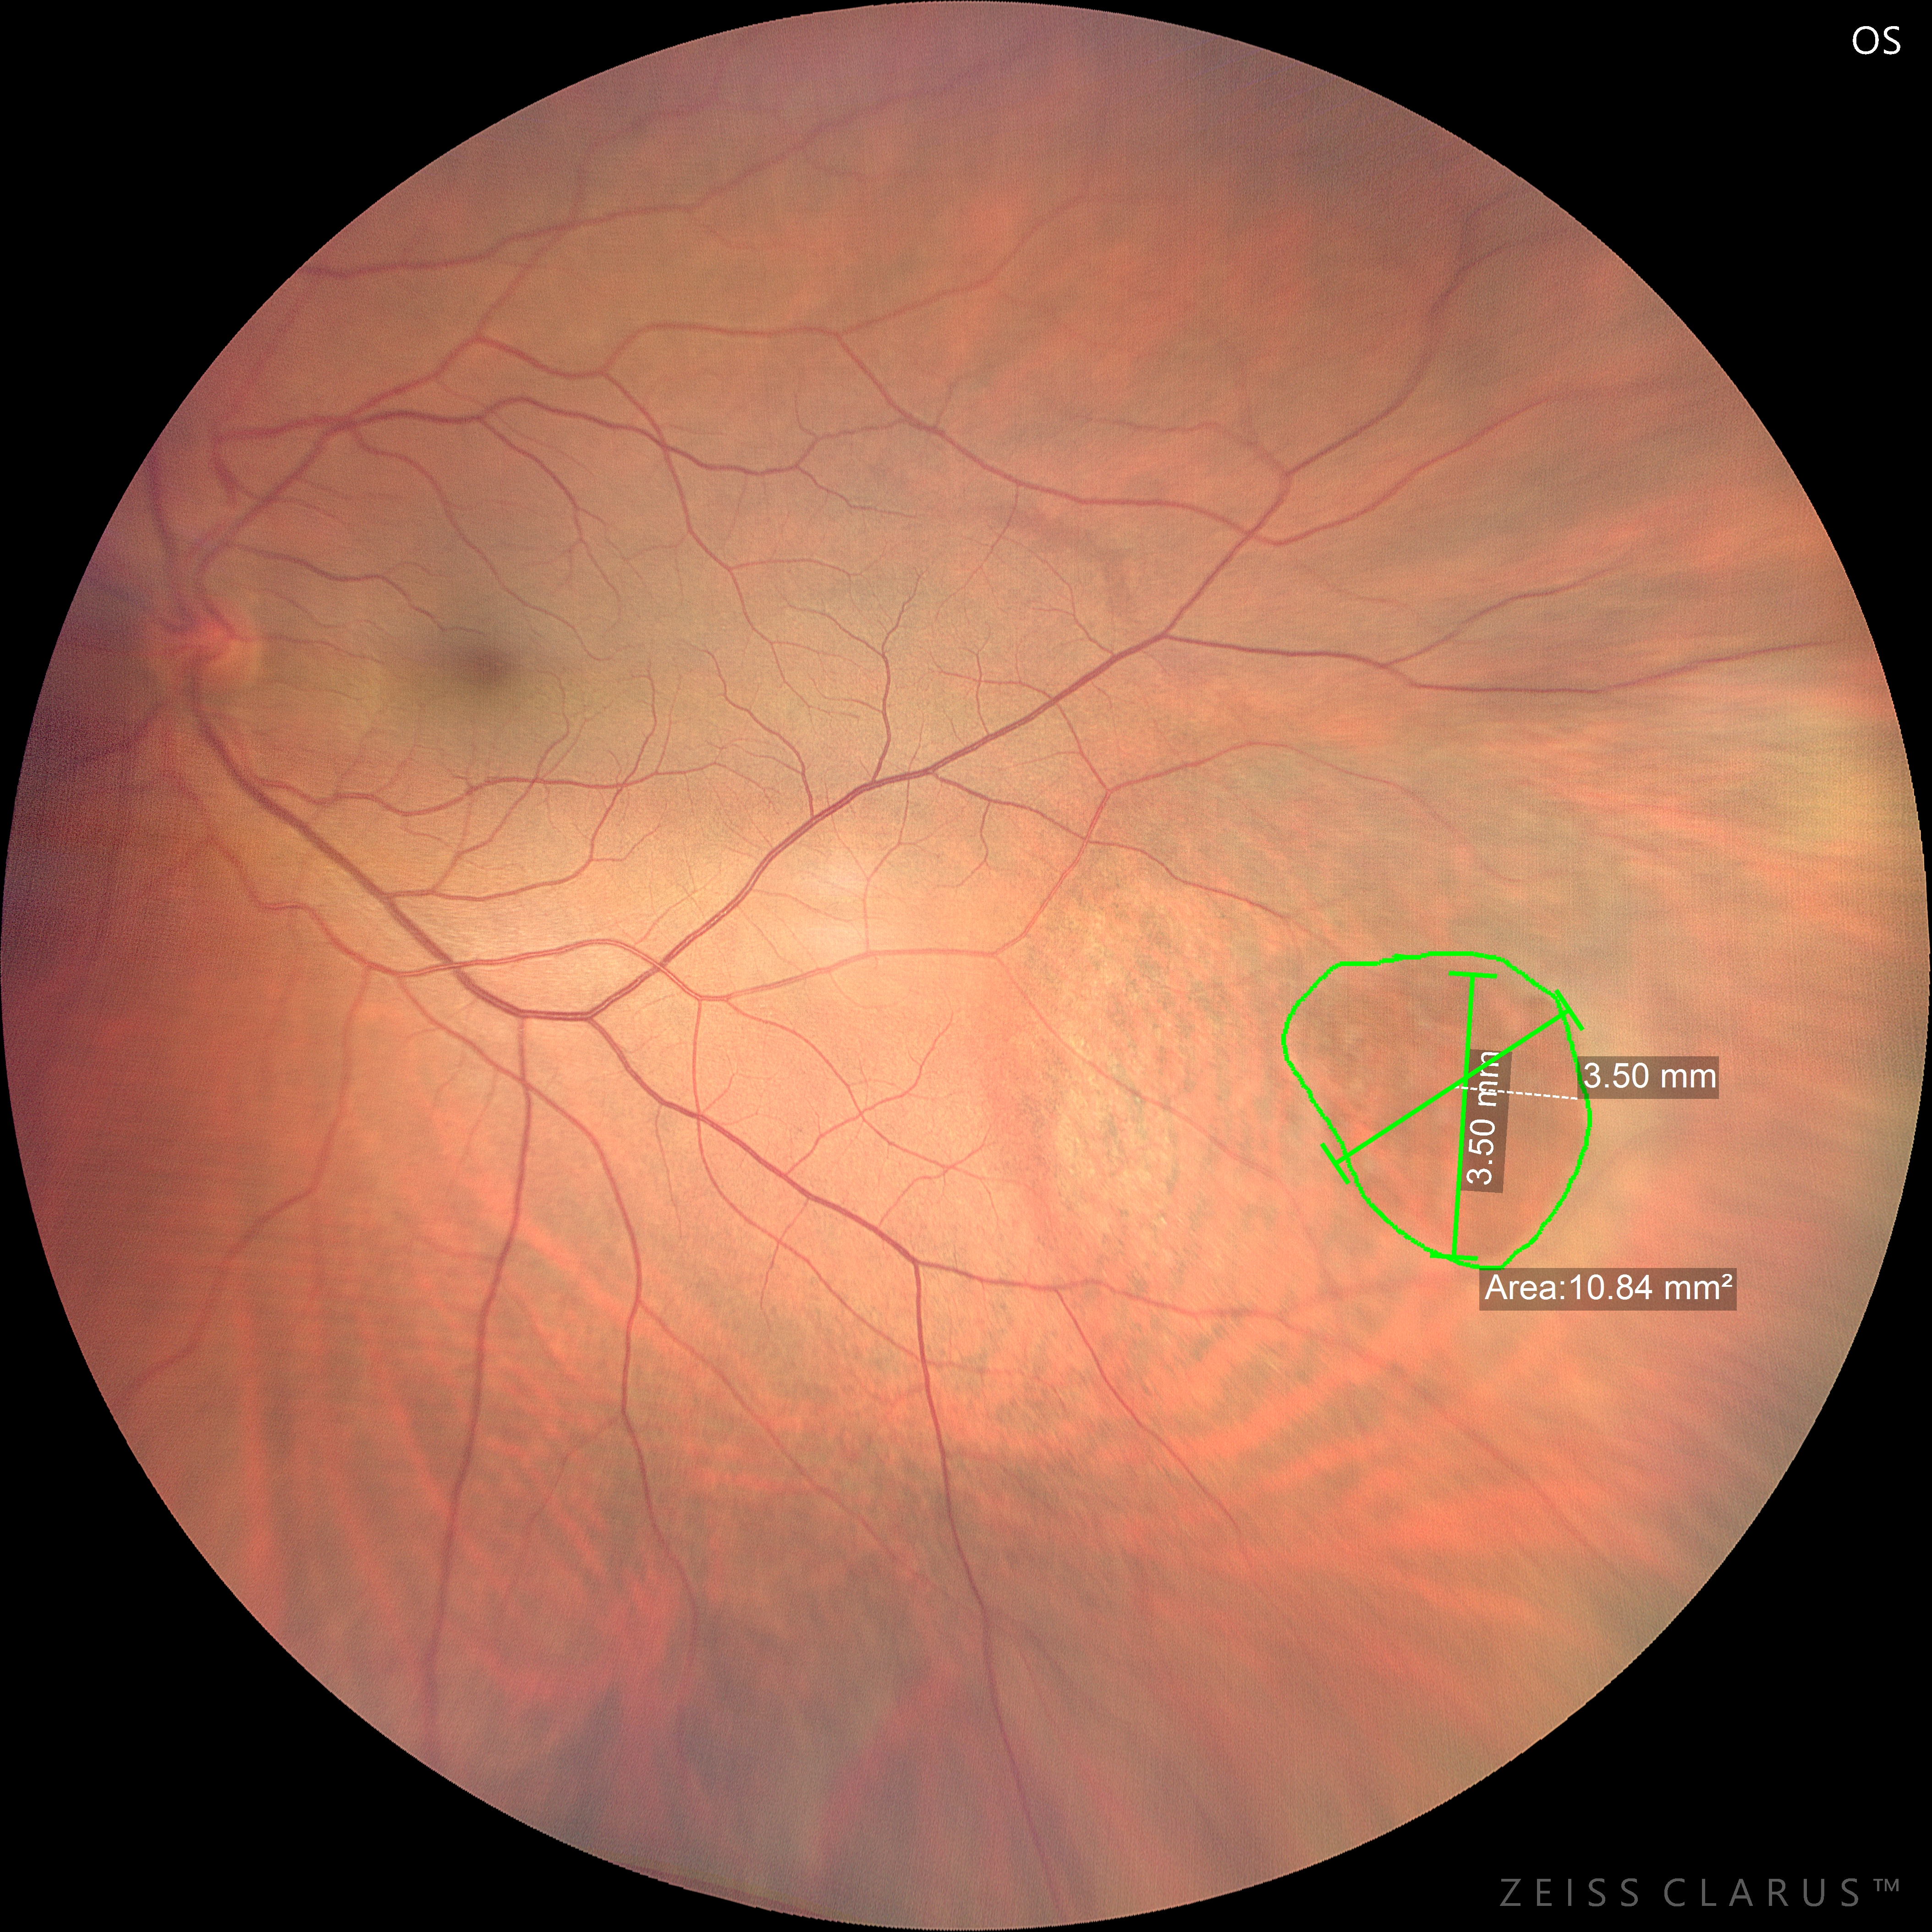 Misurazioni lineari e di area con imaging ultra widefield di un foro retinico periferico gigante